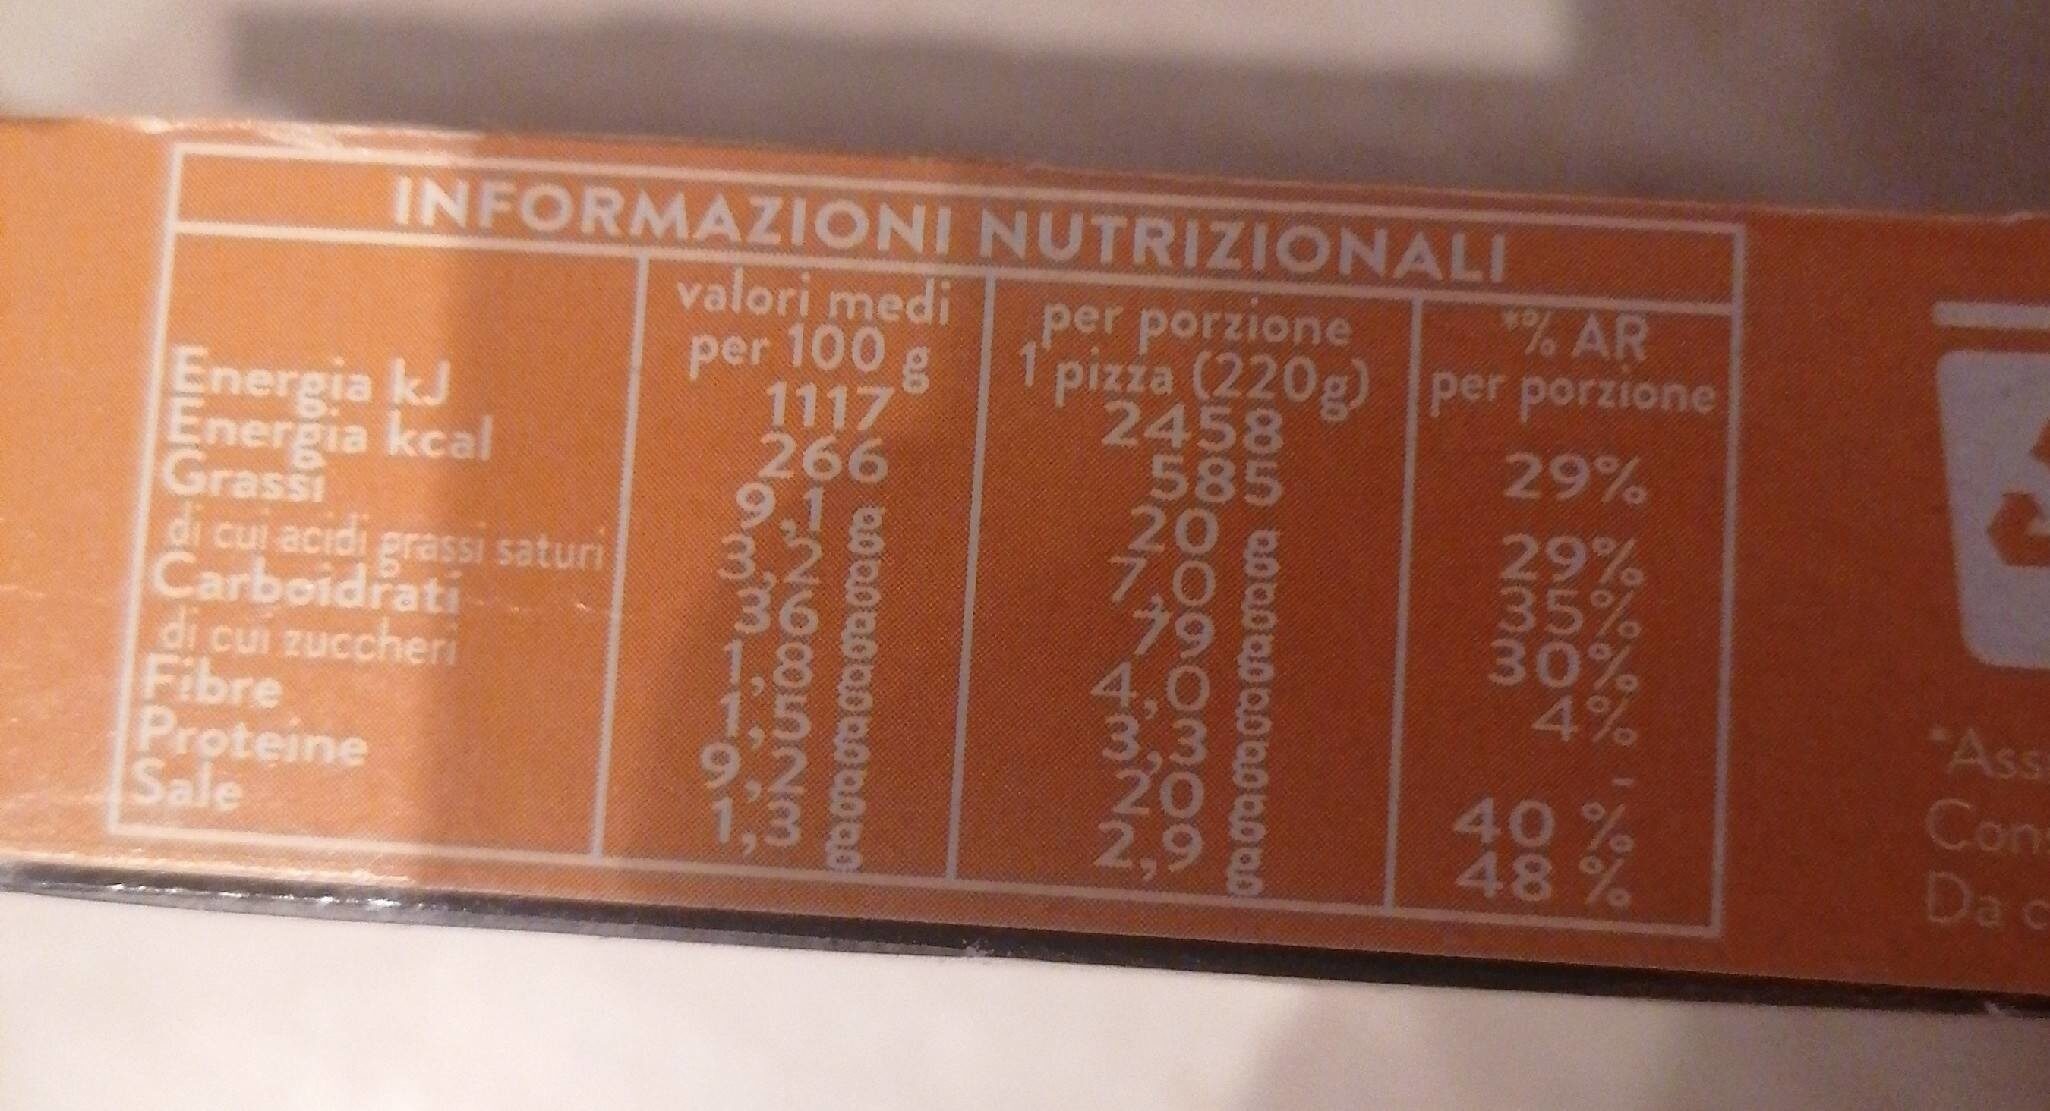 Extra voglia formato pala pizza margherita - Tableau nutritionnel